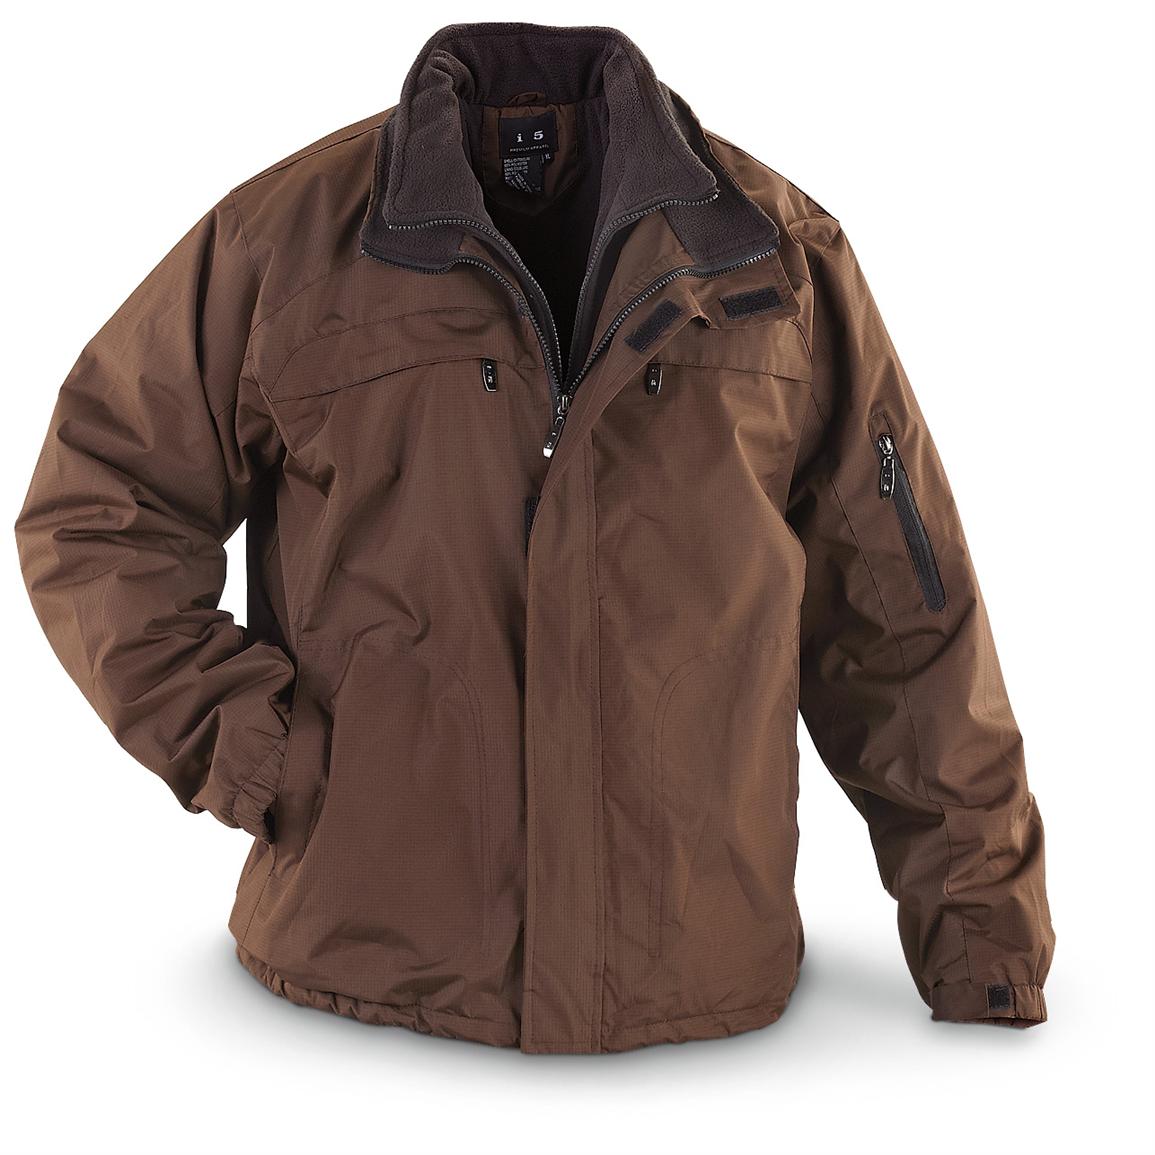 I5® Nylon Ripstop Jacket - 225598, Uninsulated Jackets & Coats at ...